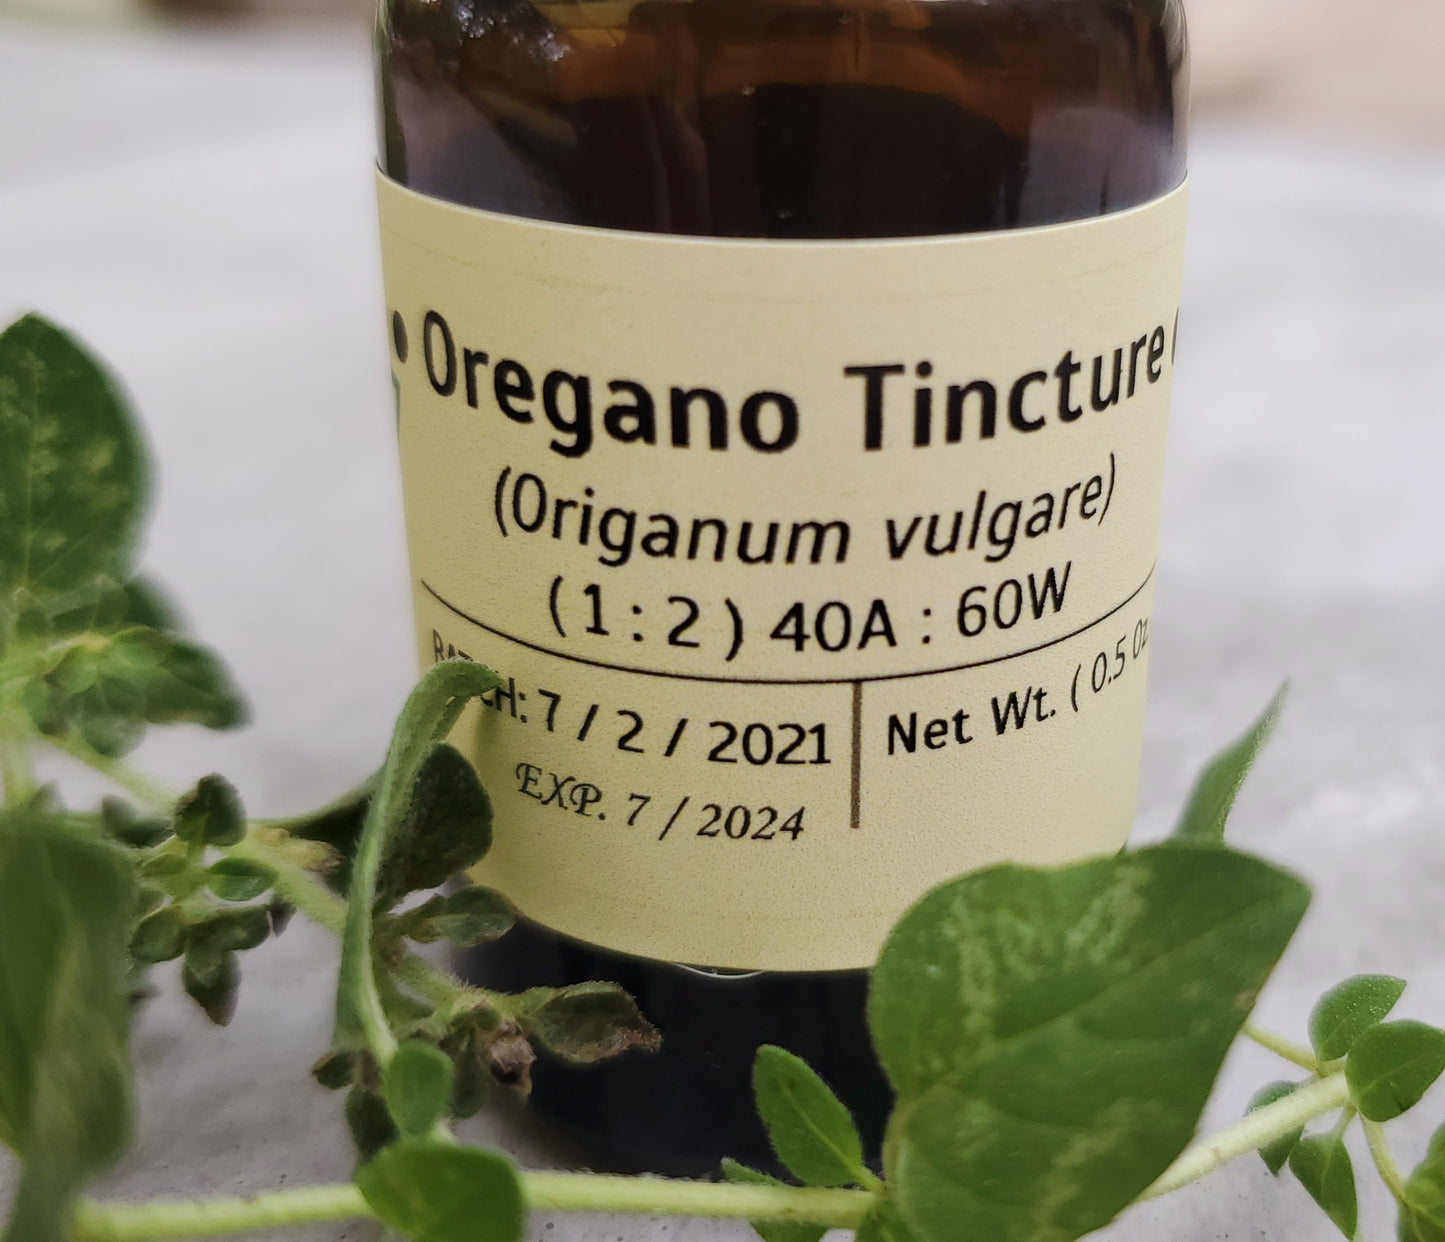 Oregano Tincture Extract